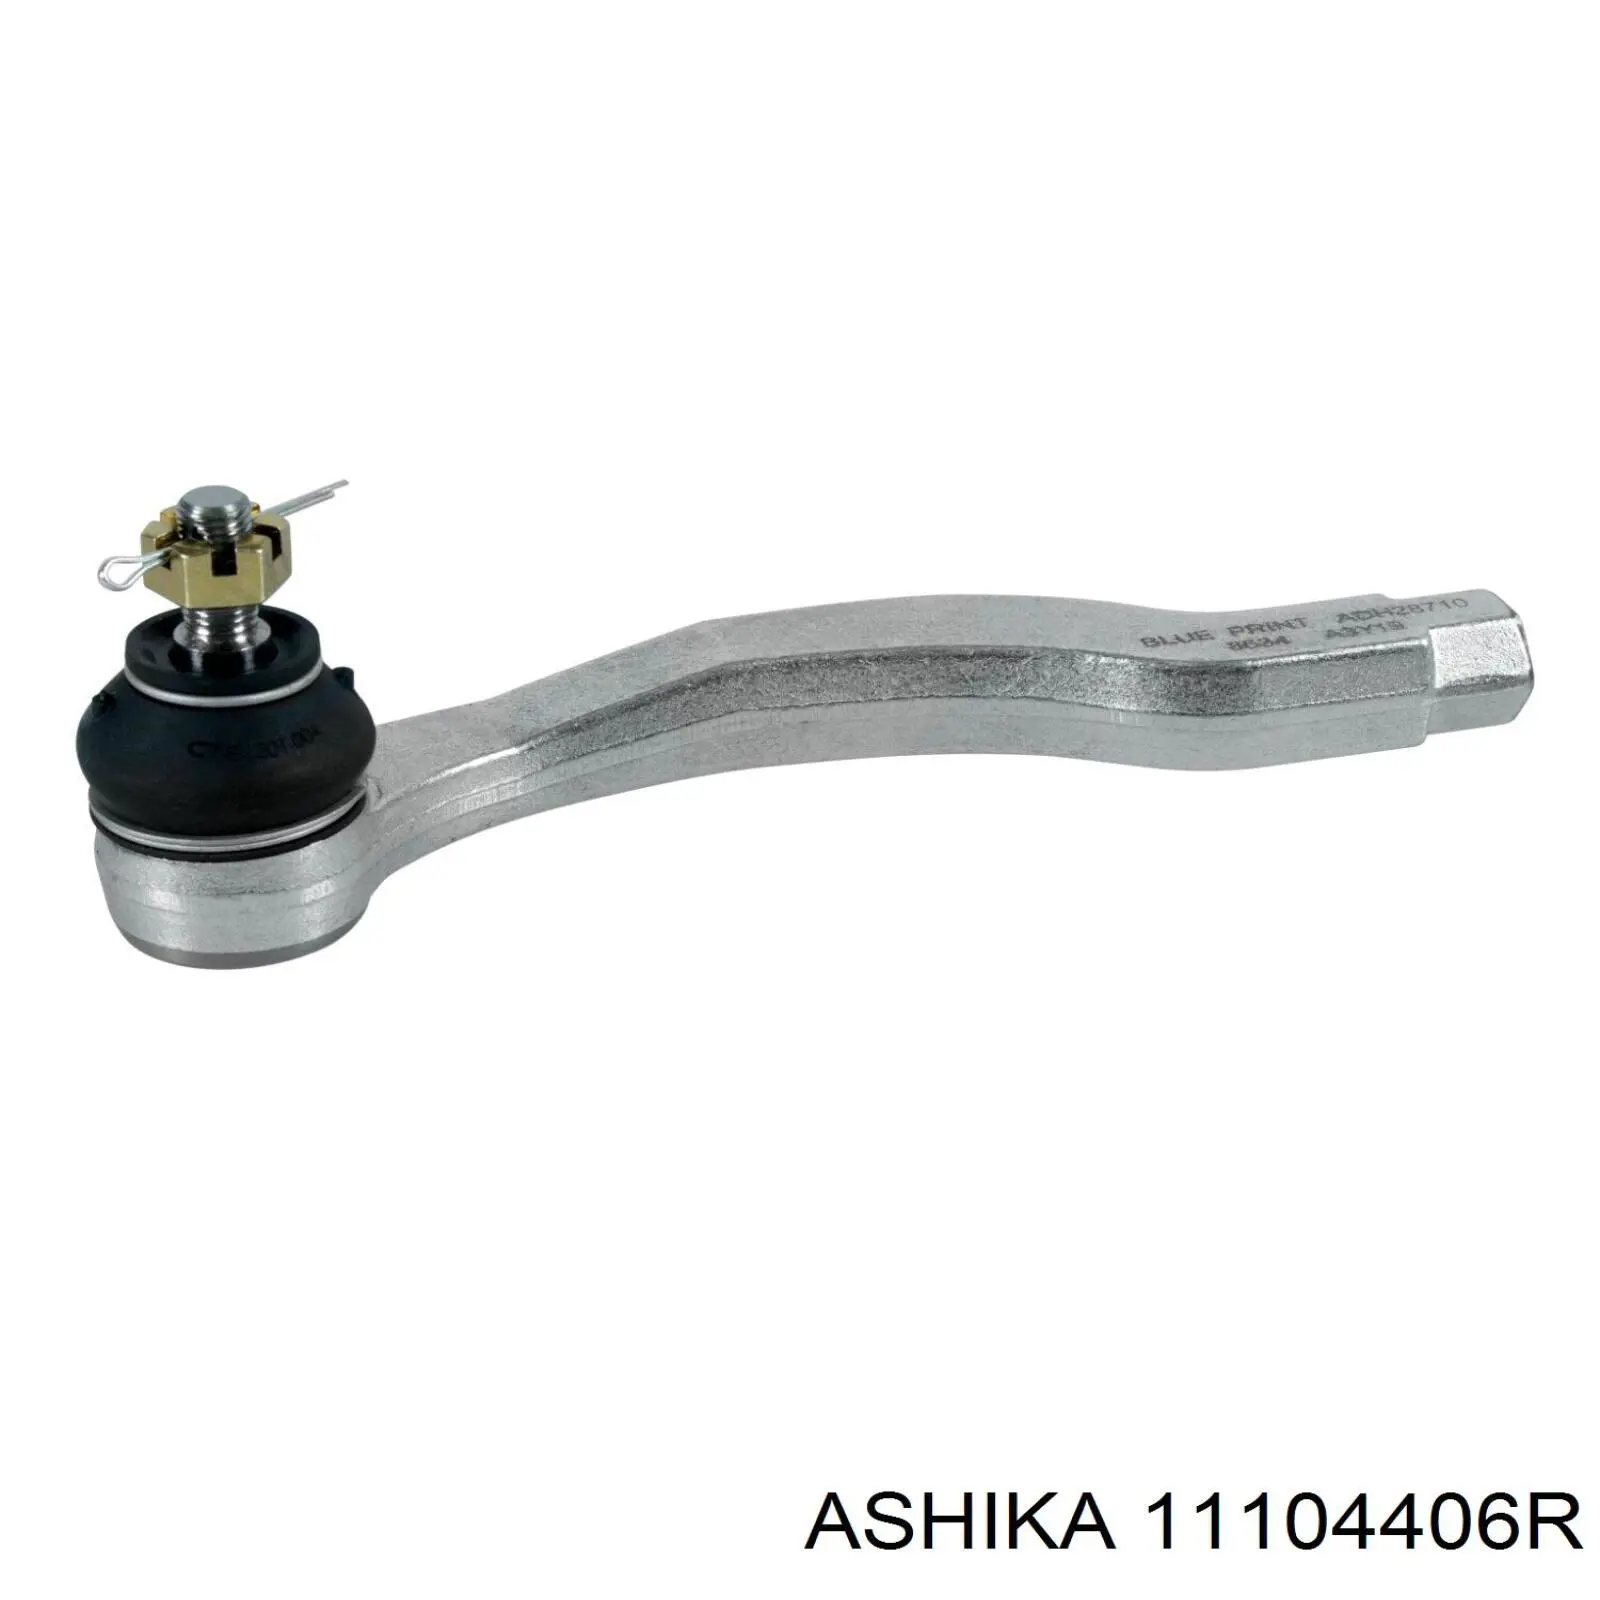 111-04-406R Ashika rótula barra de acoplamiento exterior